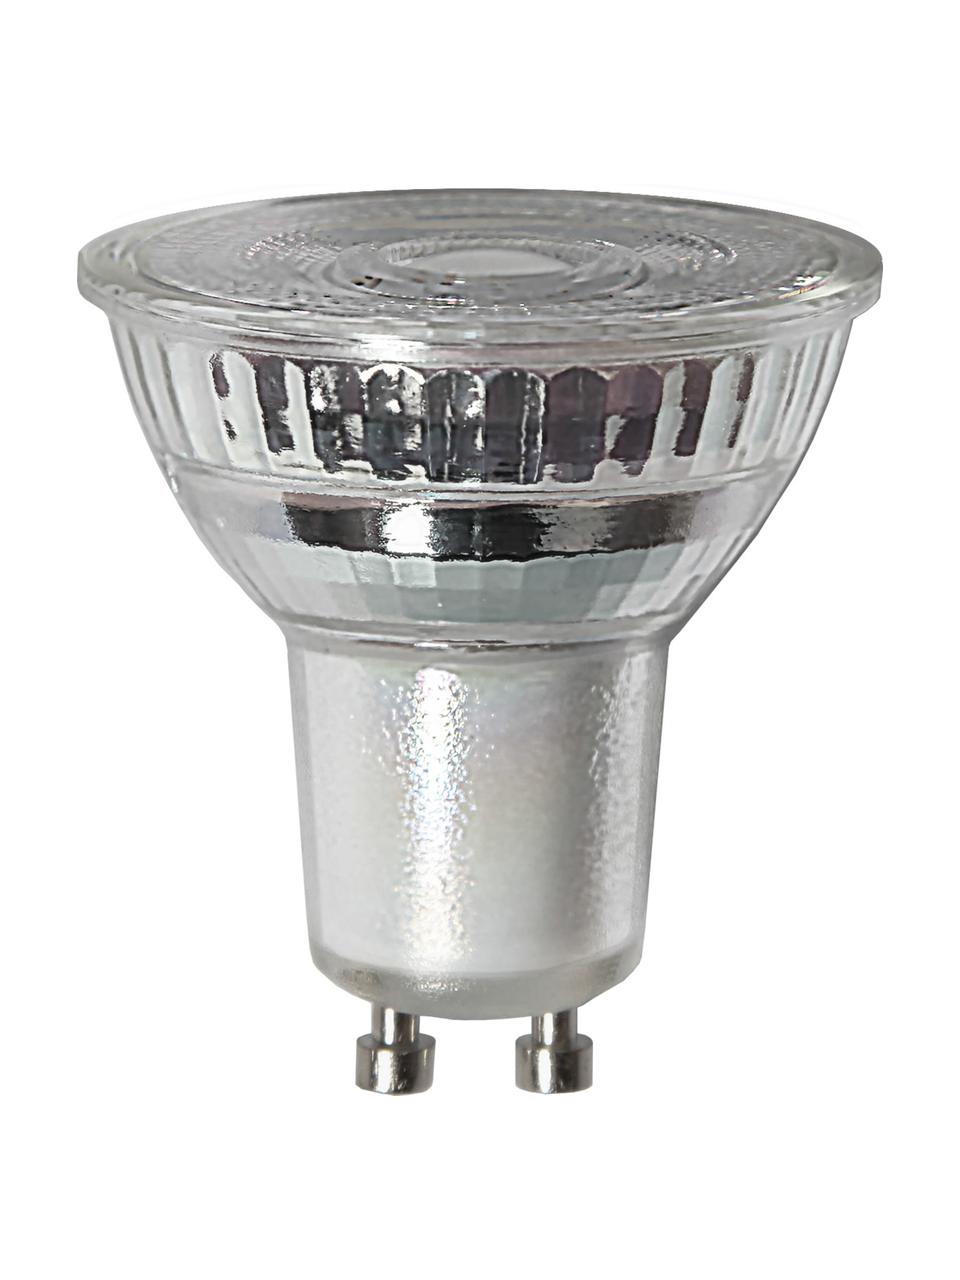 GU10 Leuchtmittel, 400lm, dimmbar, warmweiss, 1 Stück, Leuchtmittelschirm: Glas, Leuchtmittelfassung: Aluminium, Transparent, Ø 5 x H 5 cm